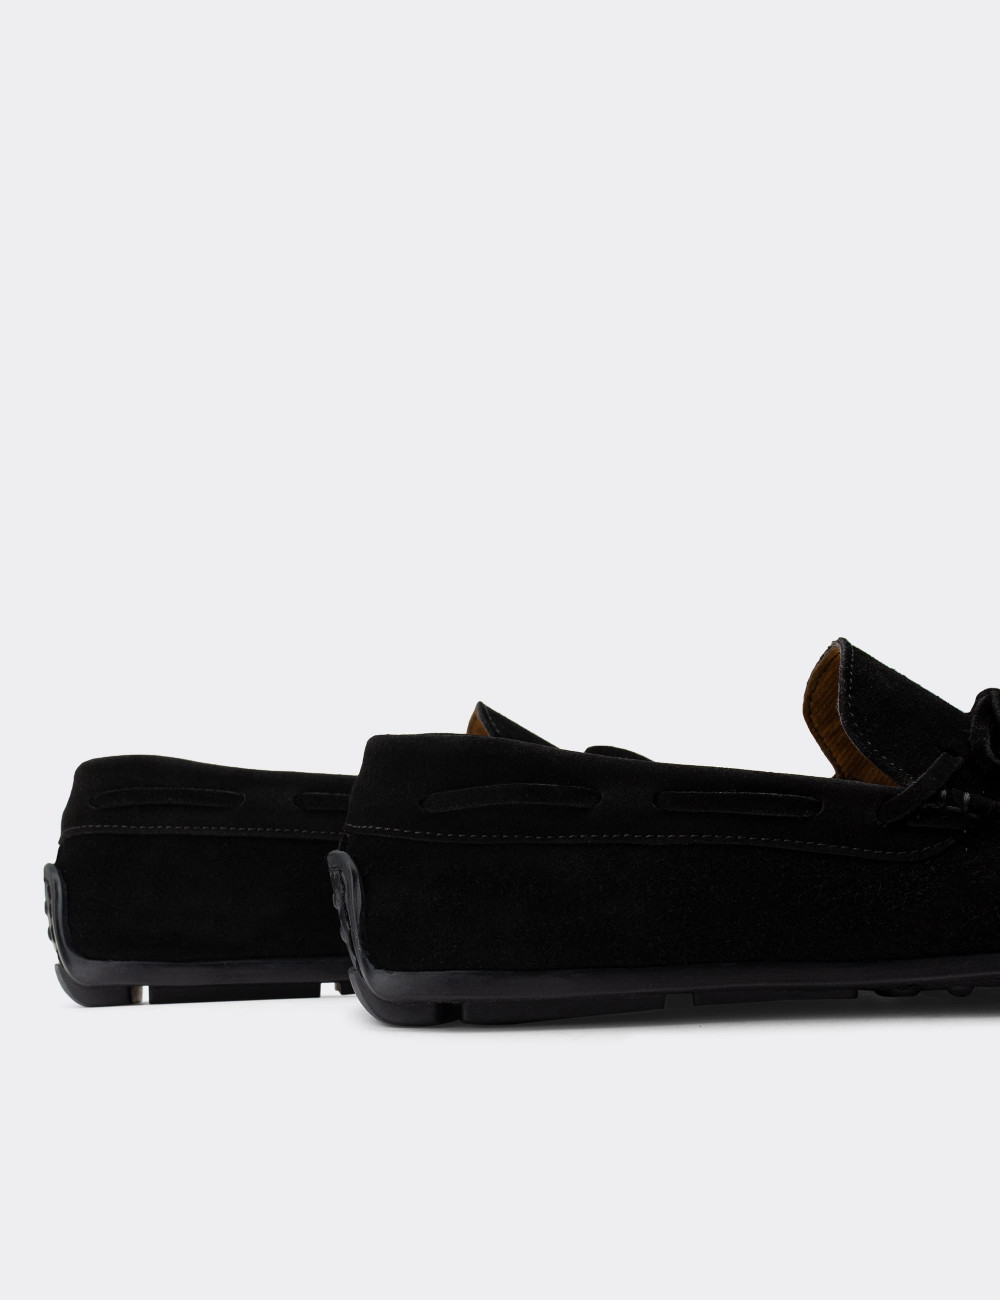 Hakiki Süet Siyah Loafer Erkek Ayakkabı - 01647MSYHC01